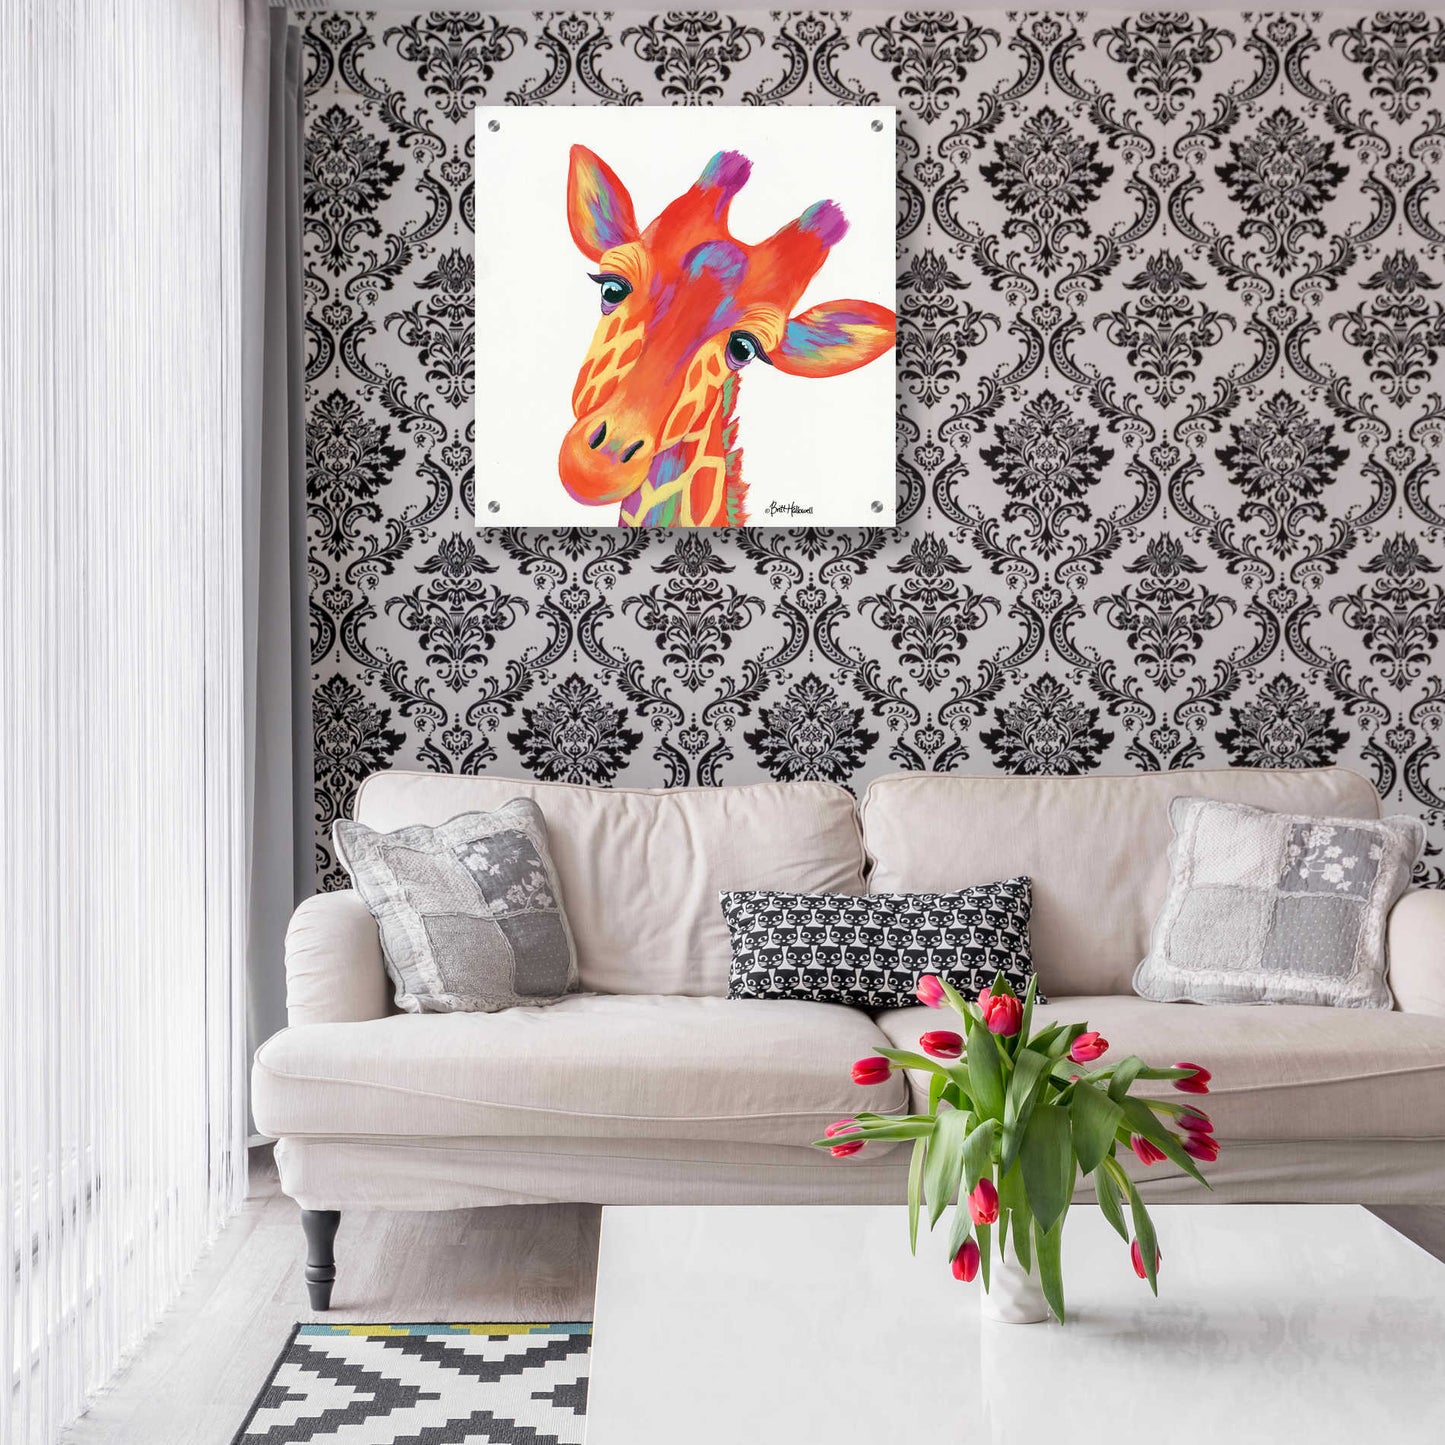 Epic Art 'Cheery Giraffe' by Britt Hallowell, Acrylic Glass Wall Art,24x24